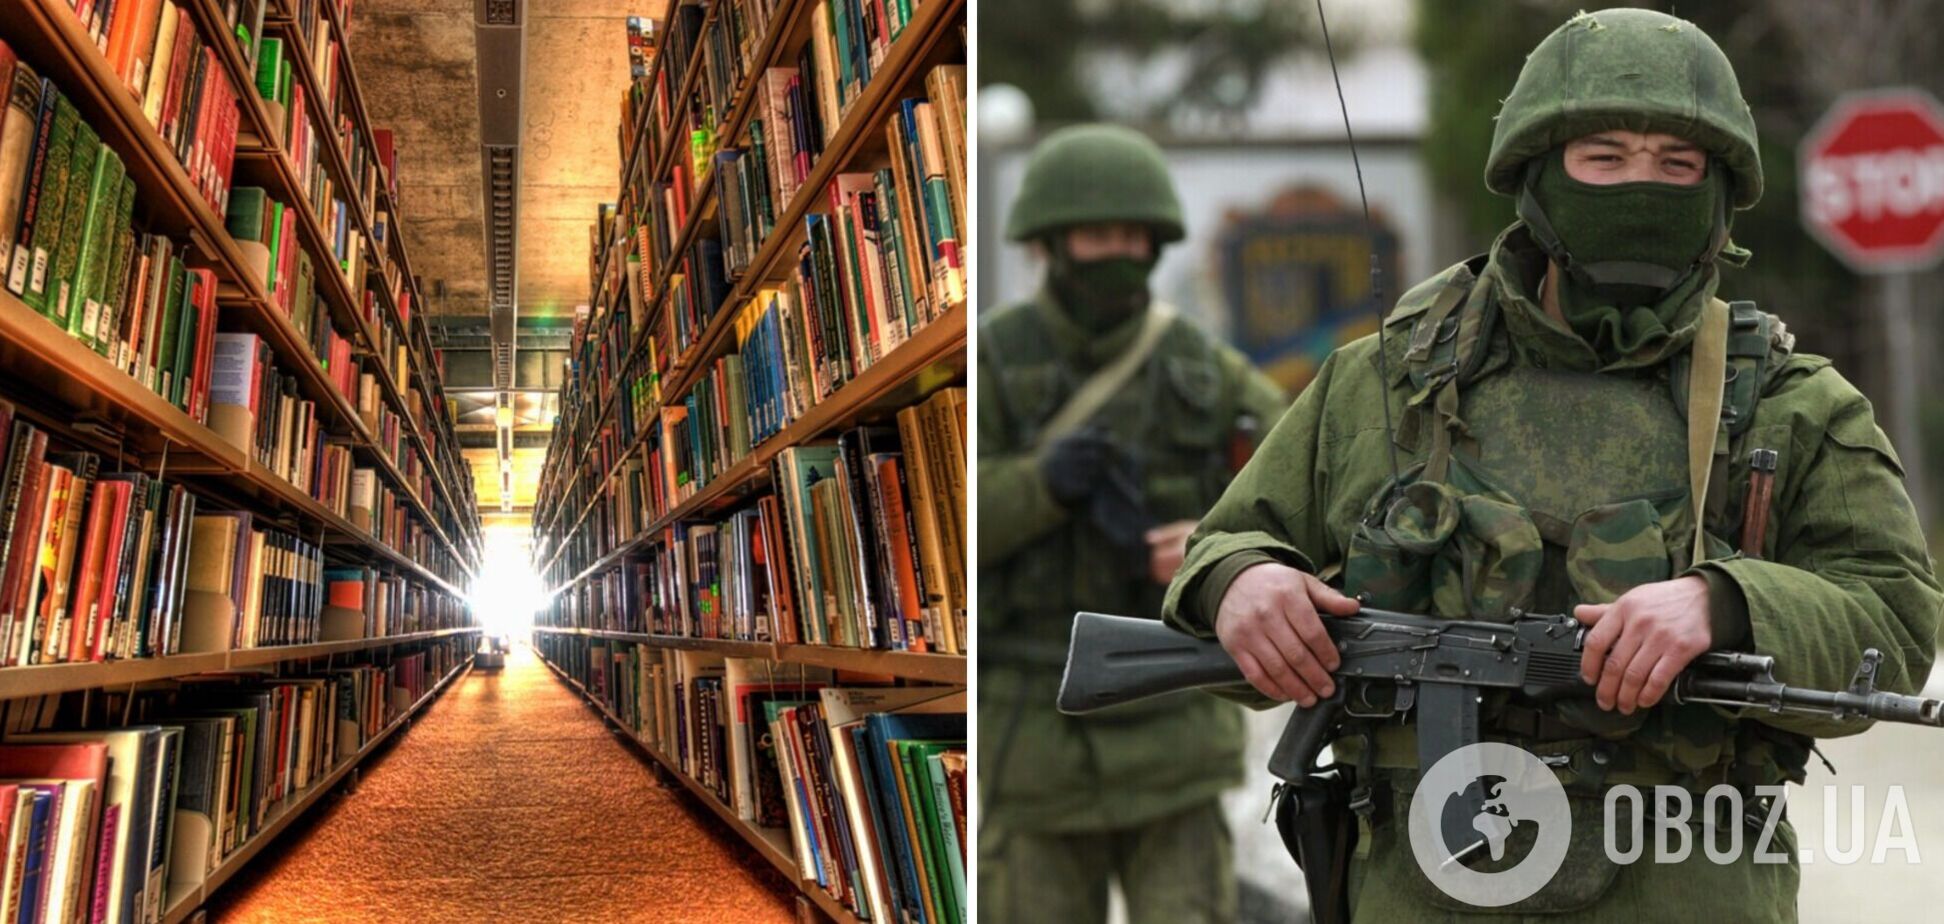 Россияне на оккупированных территориях массово изымают украинские книги – ЦНС